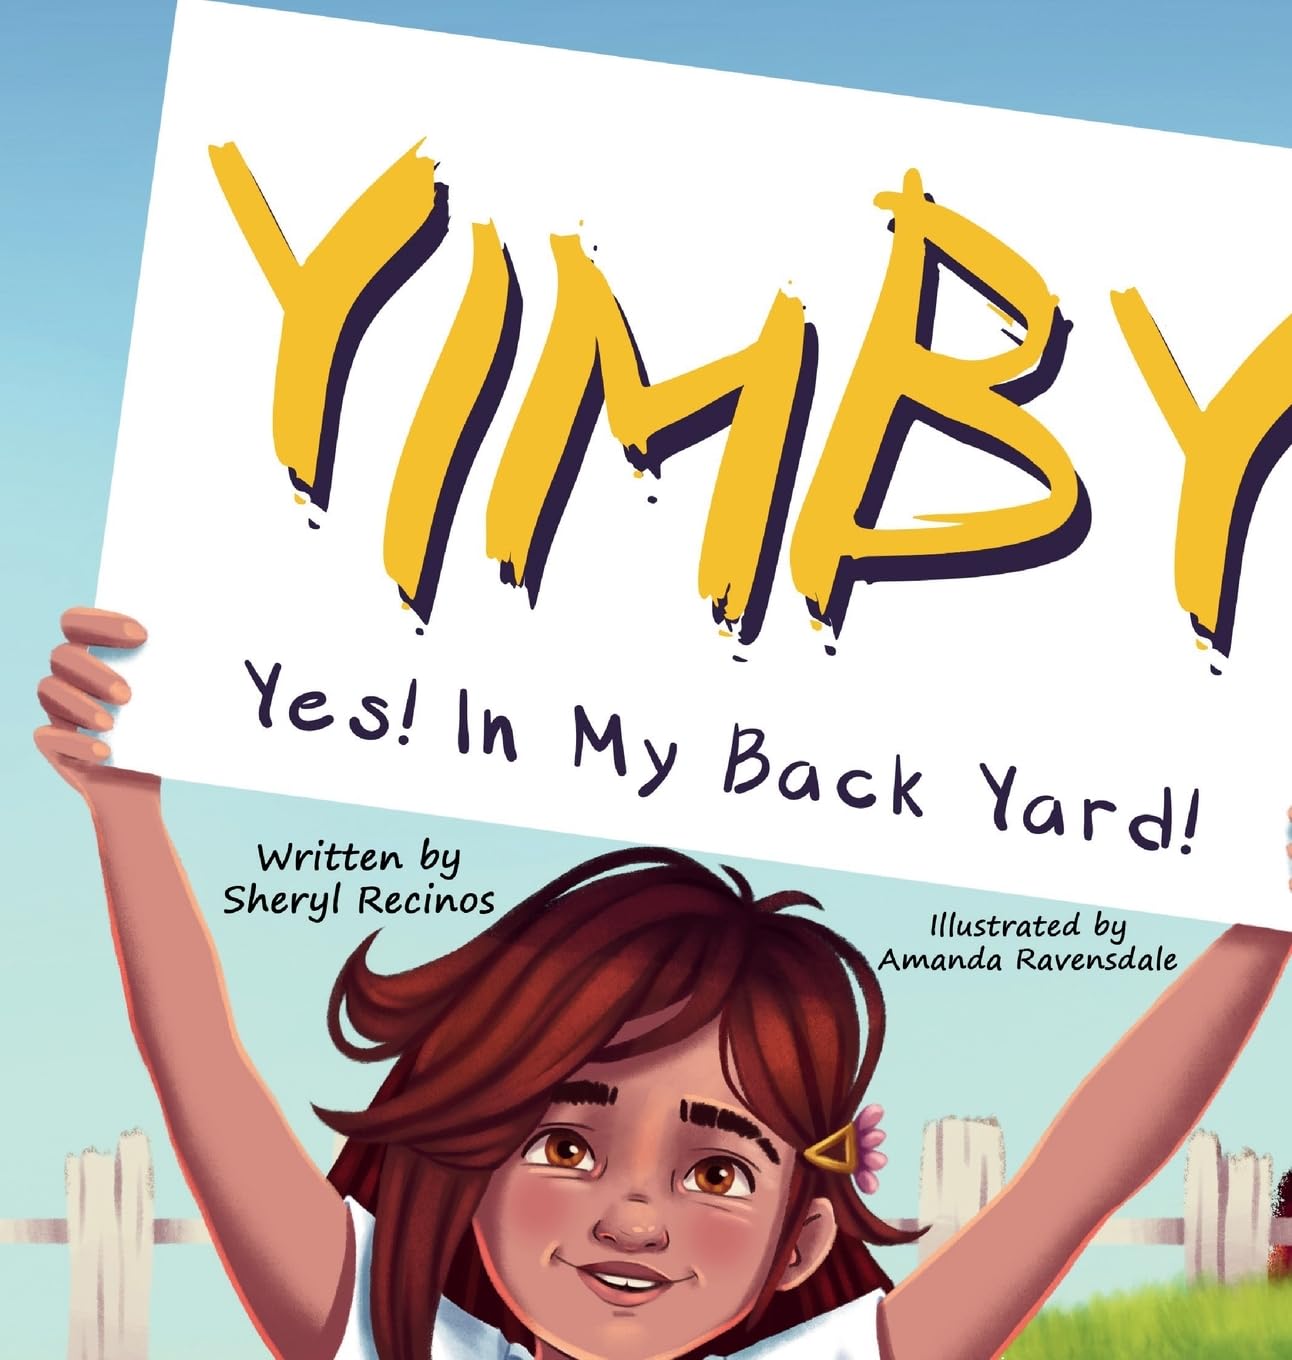 Yimby, girl, sign, cartoon, graphic, backyard